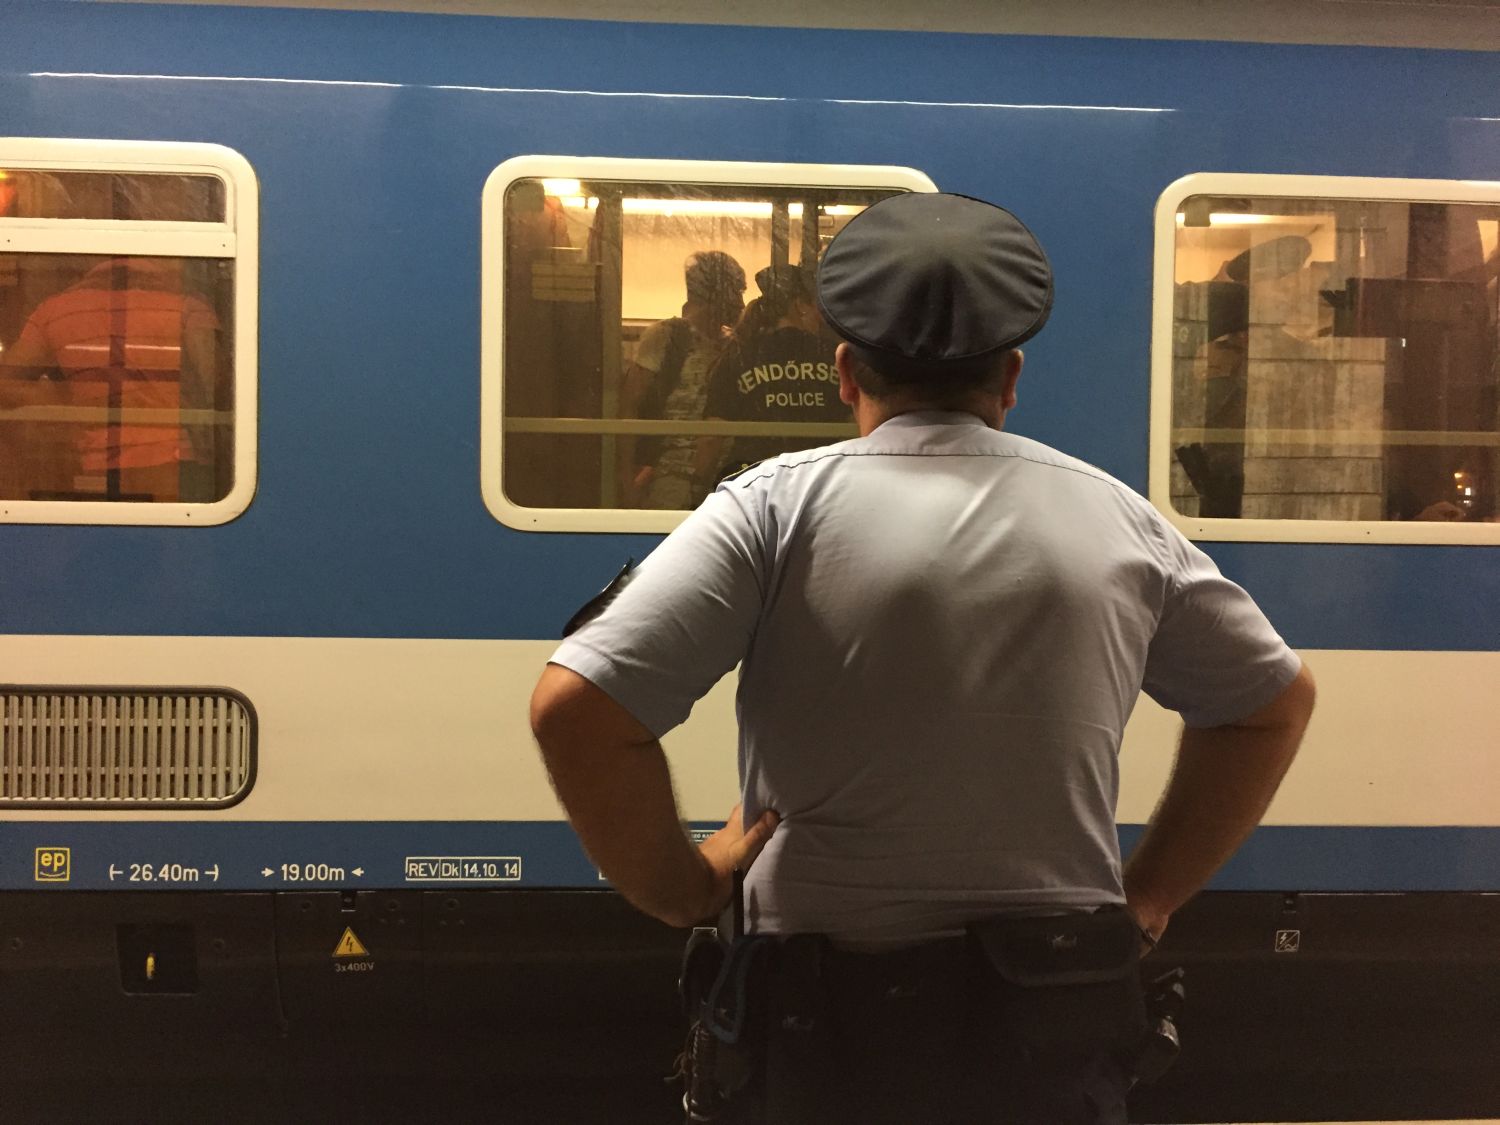 Razzia egy menekültetkkel teli vonaton - megtört az erőszakmonopólium?